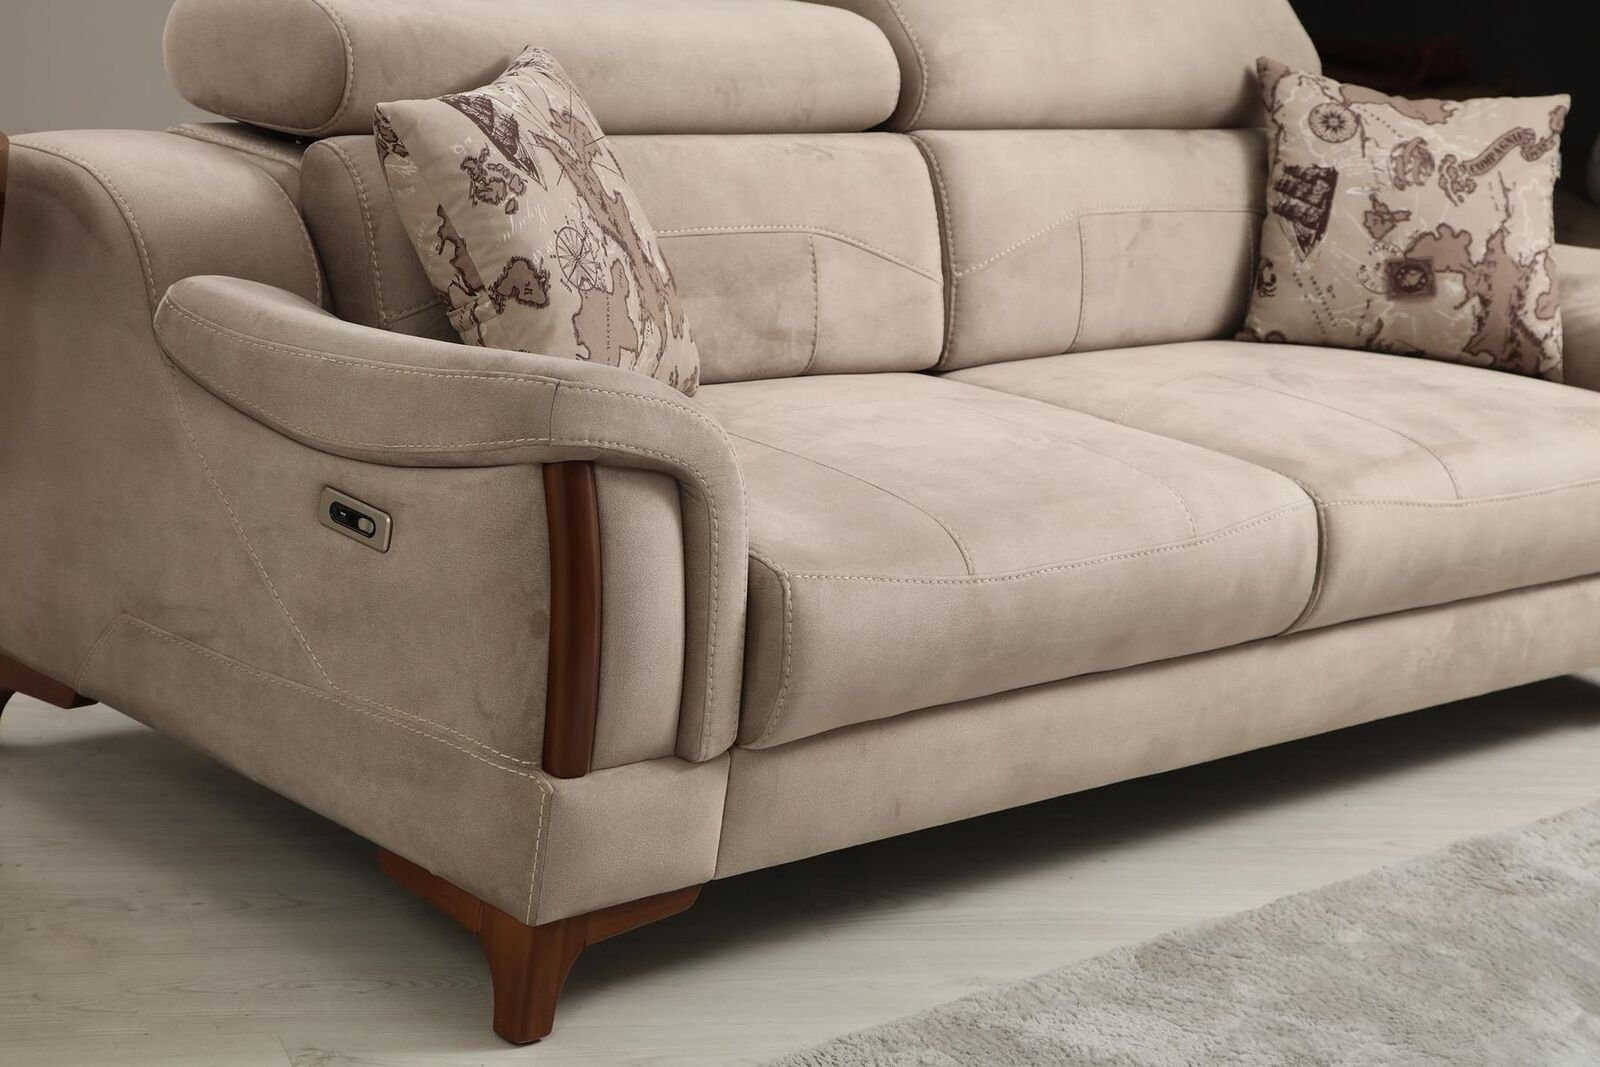 JVmoebel 3-Sitzer Sofa Teile, Möbel in Made Textil, Polster Modern Europa 1 Designer Wohnzimmer